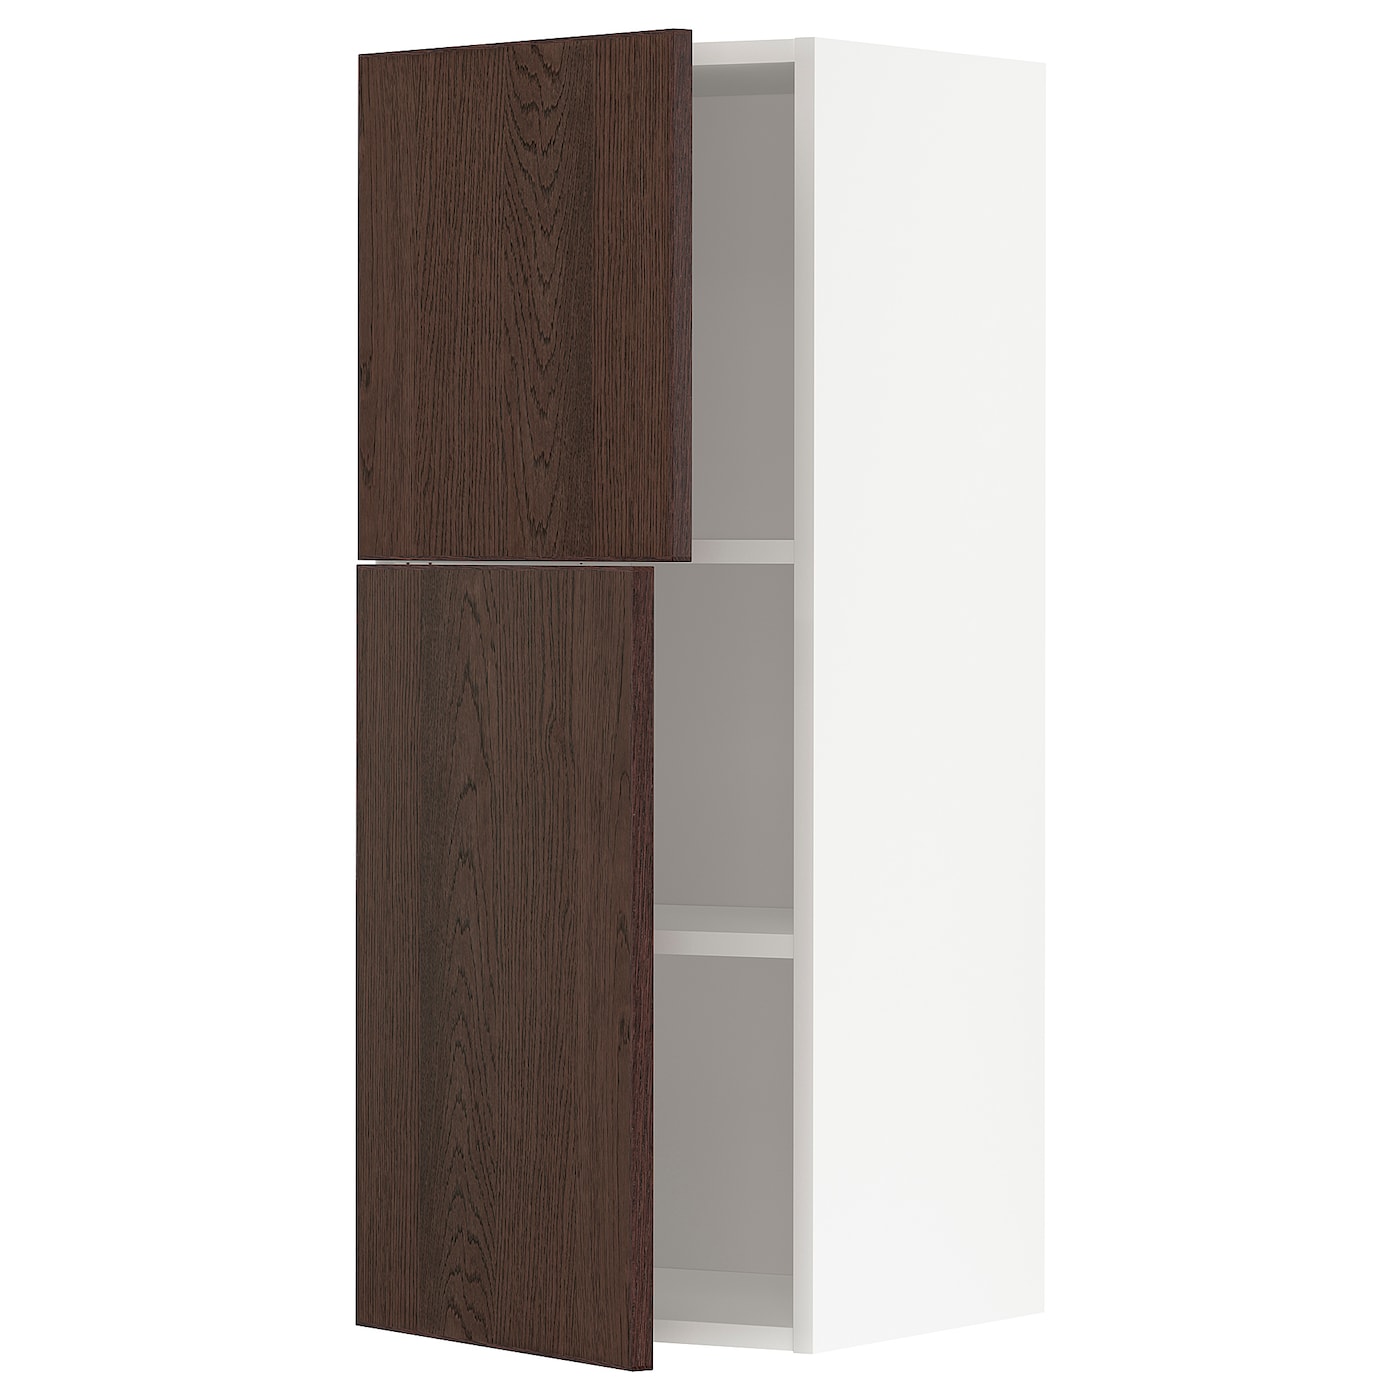 Навесной шкаф с полкой - METOD IKEA/ МЕТОД ИКЕА, 10х40 см,  белый/коричневый